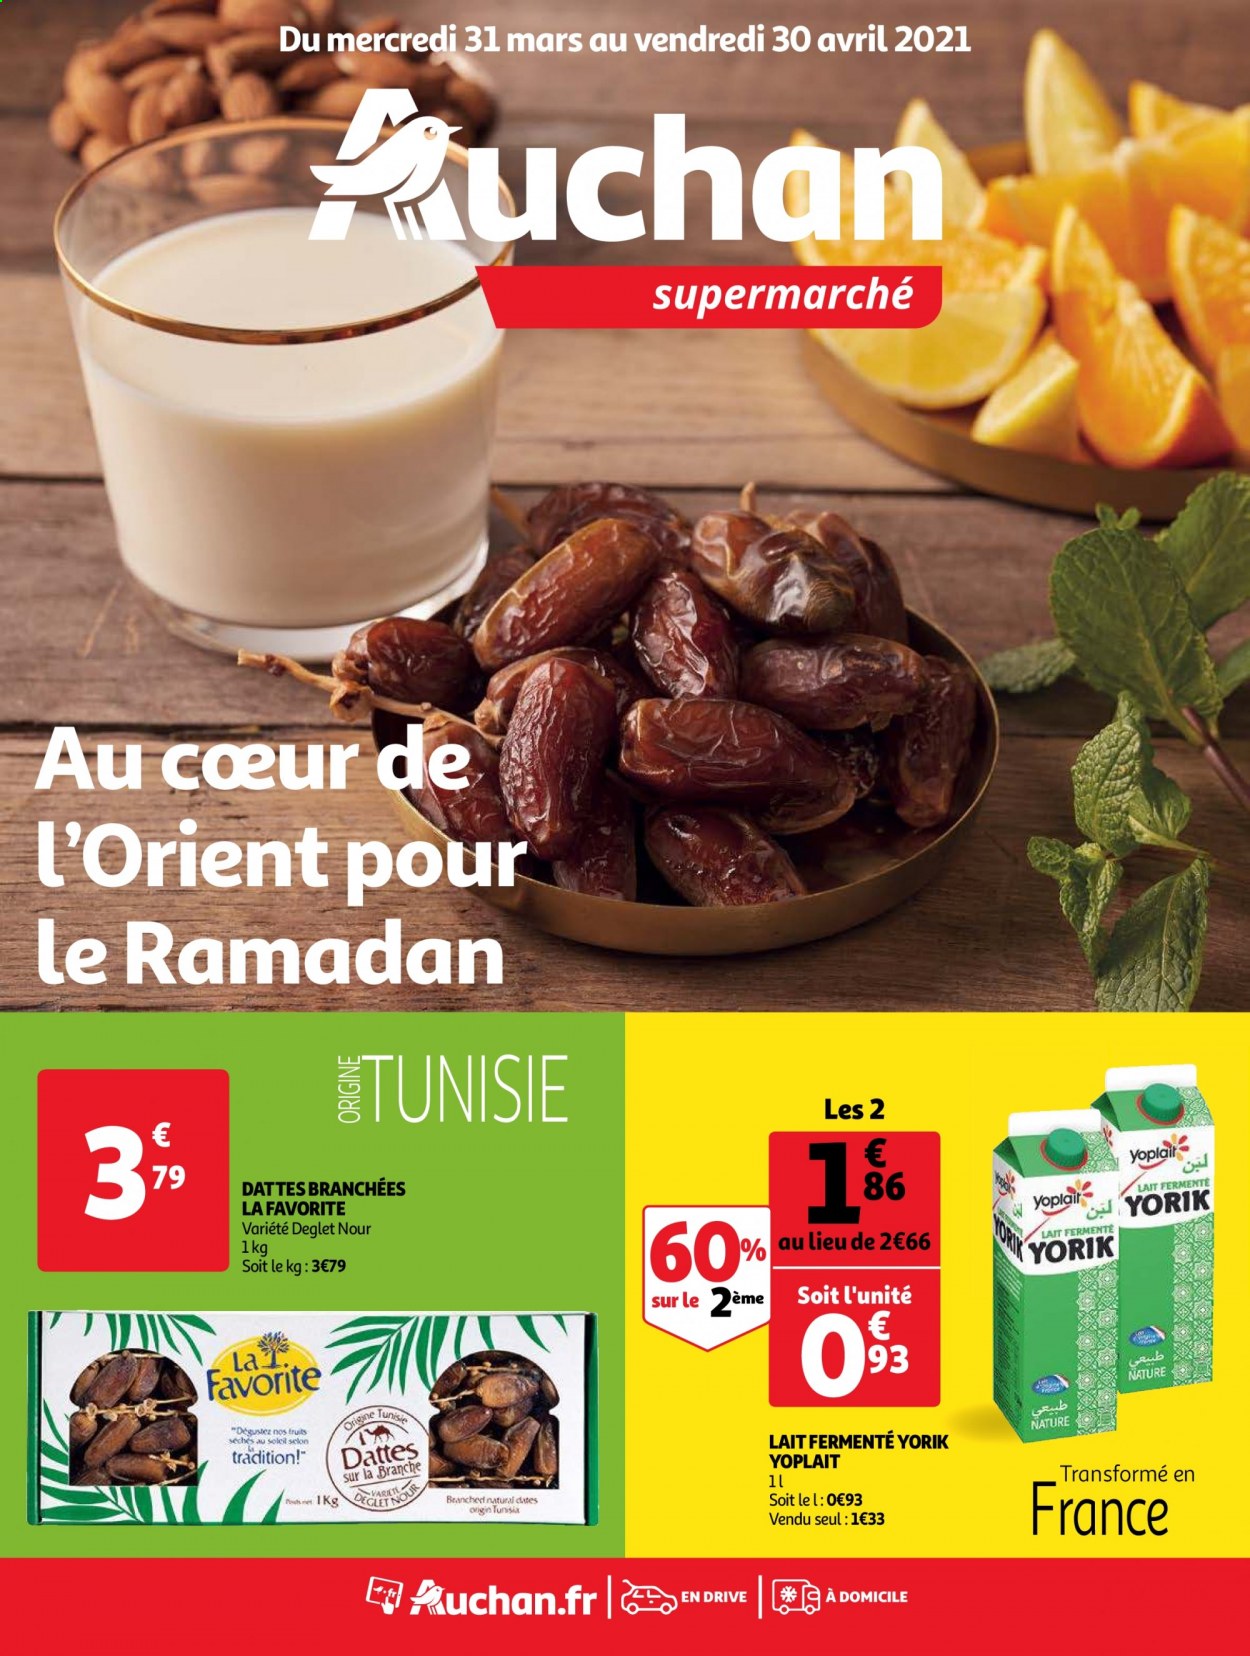 thumbnail - Catalogue Auchan - 31/03/2021 - 30/04/2021 - Produits soldés - Yoplait, lait, datte. Page 1.